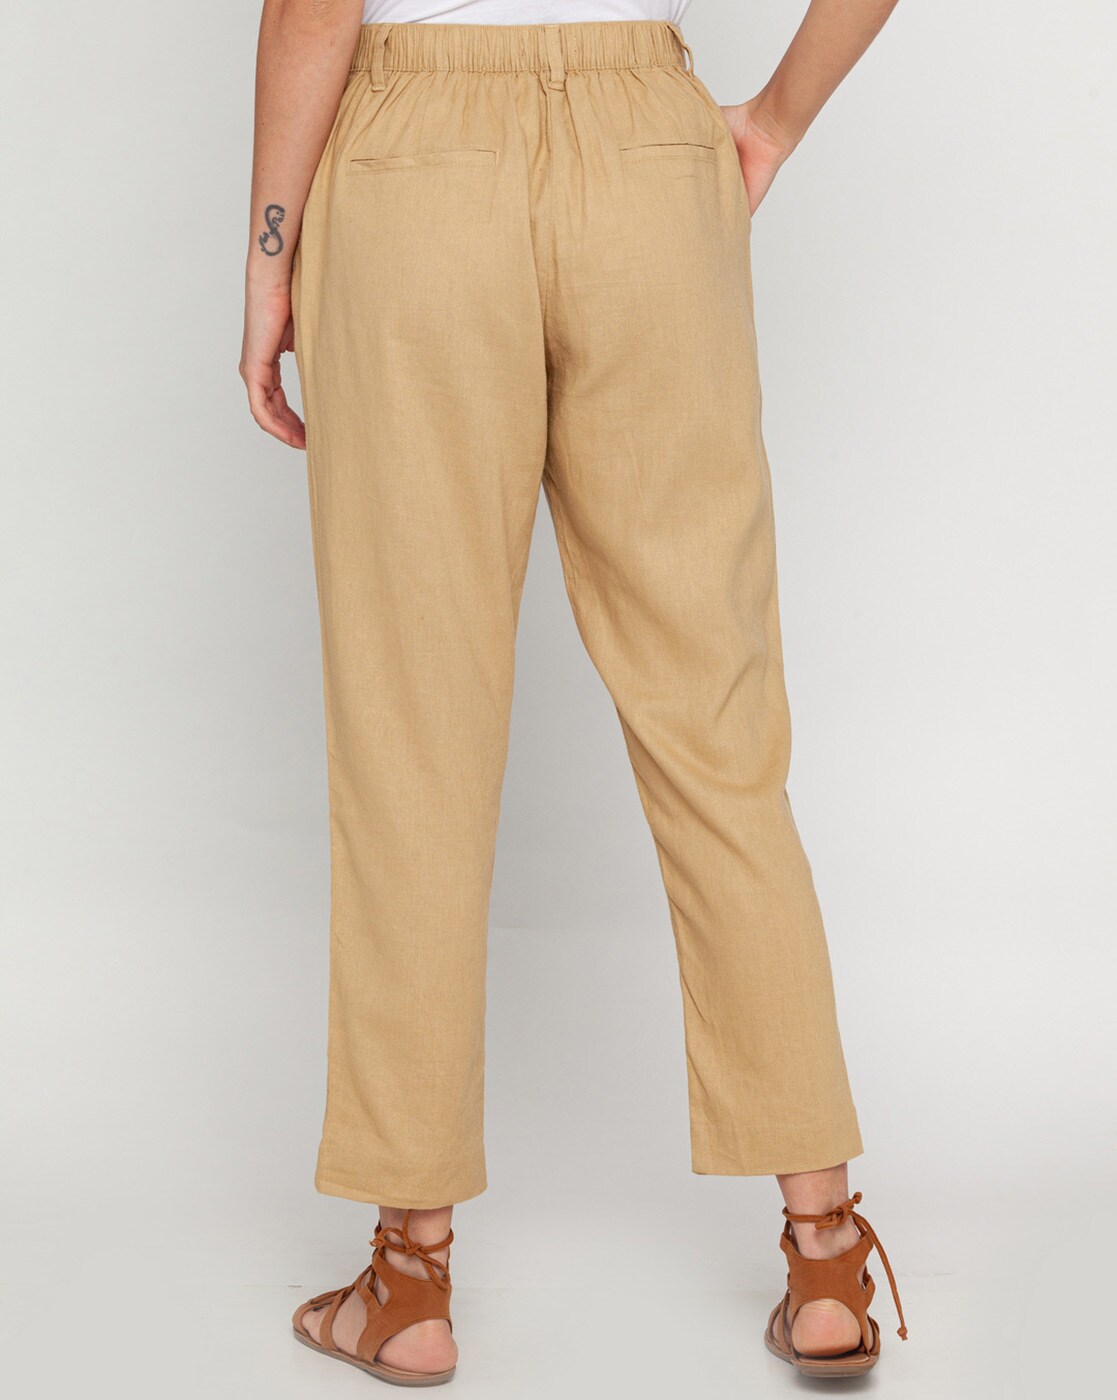 Buy Beige Trousers & Pants for Women by Zink London Online